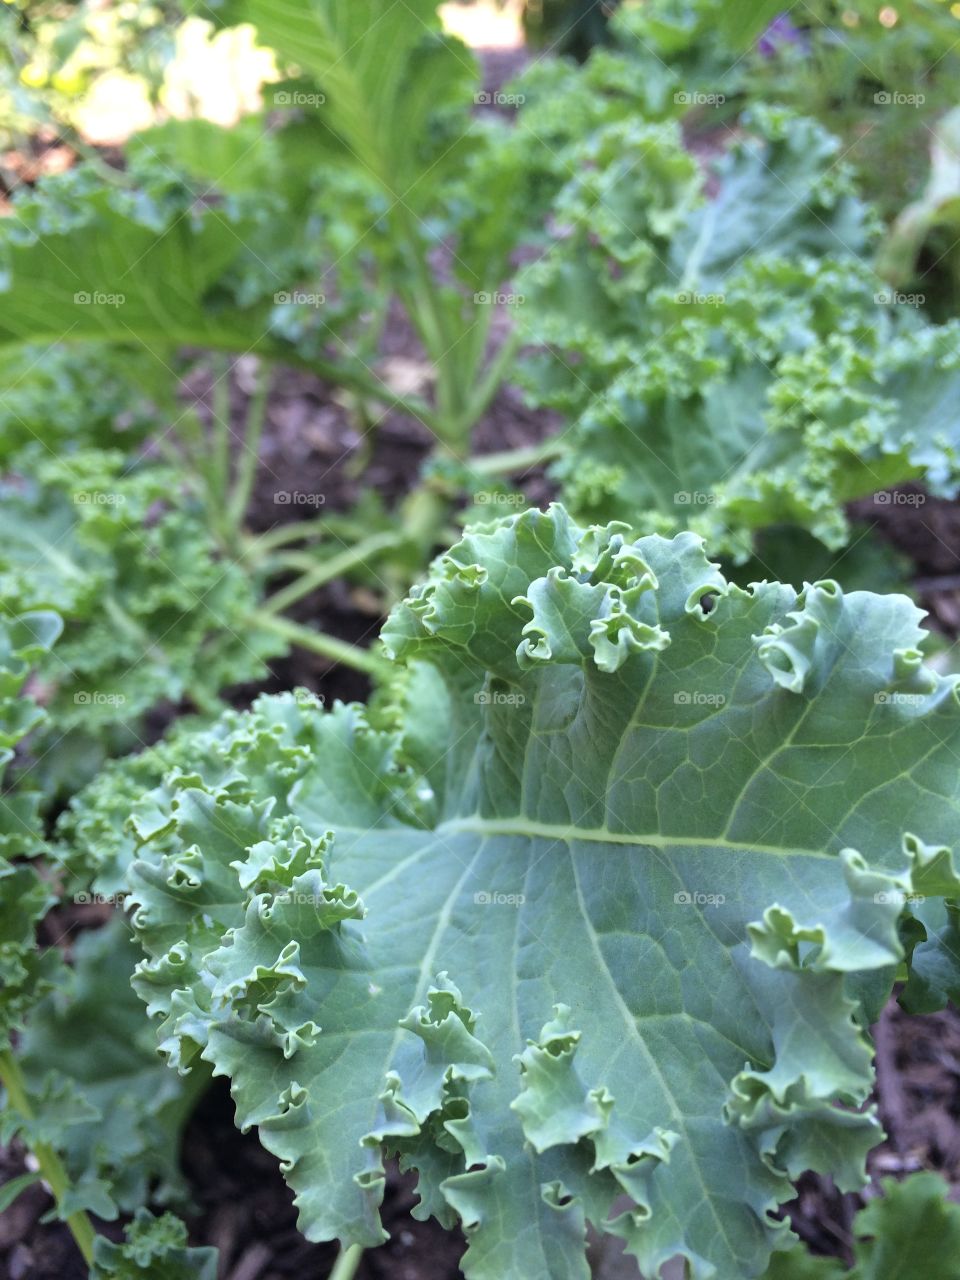 Kale!!